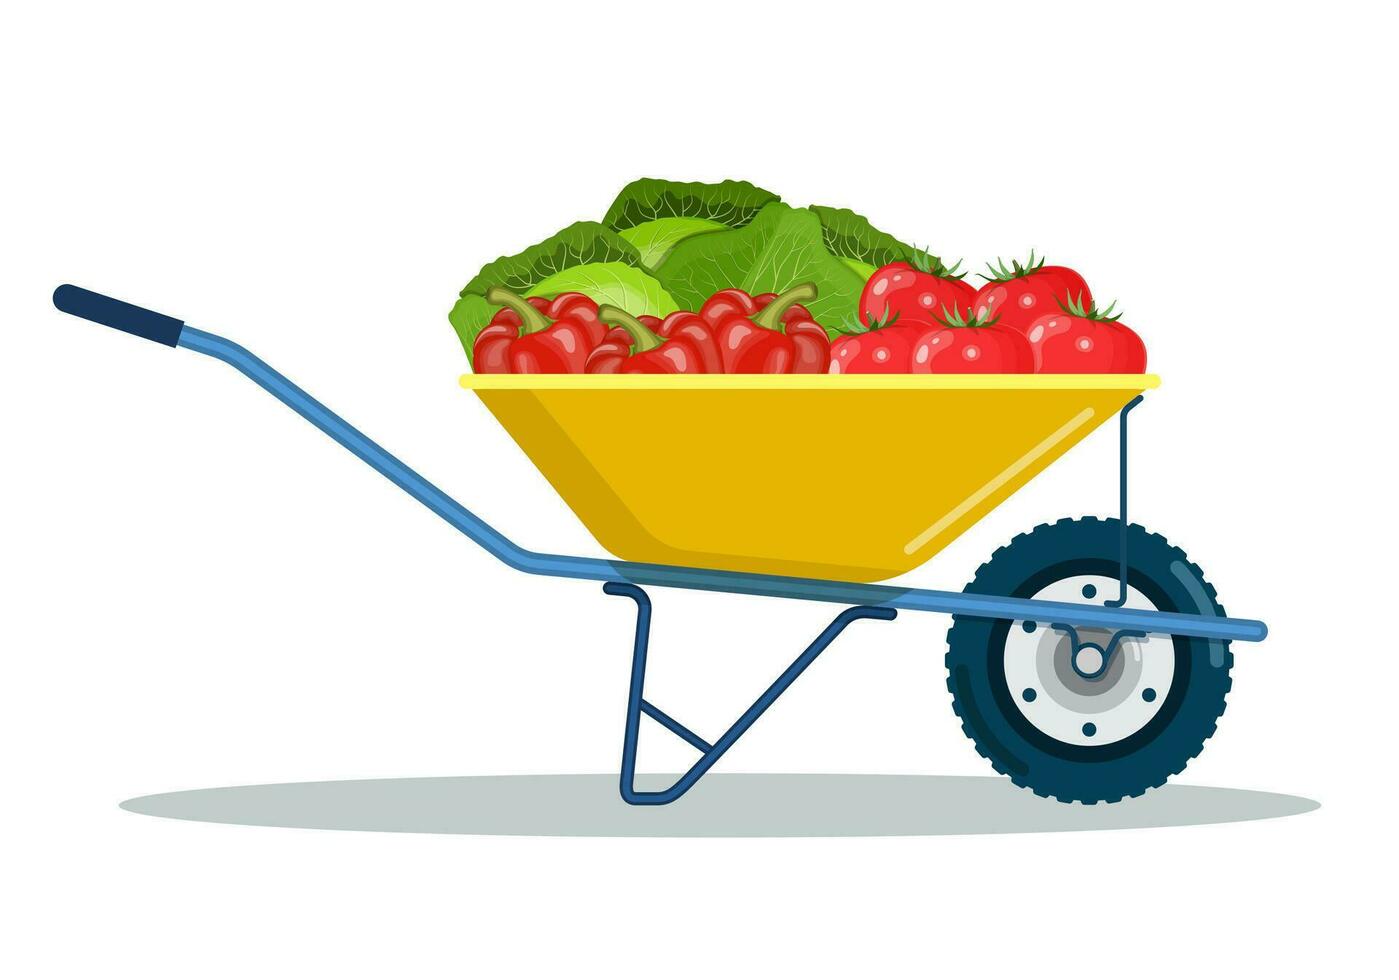 jardín carro con repollo, pimientos, Tomates. orgánico granja productos metal carretilla lleno de maduro vegetales. vector ilustración en plano estilo